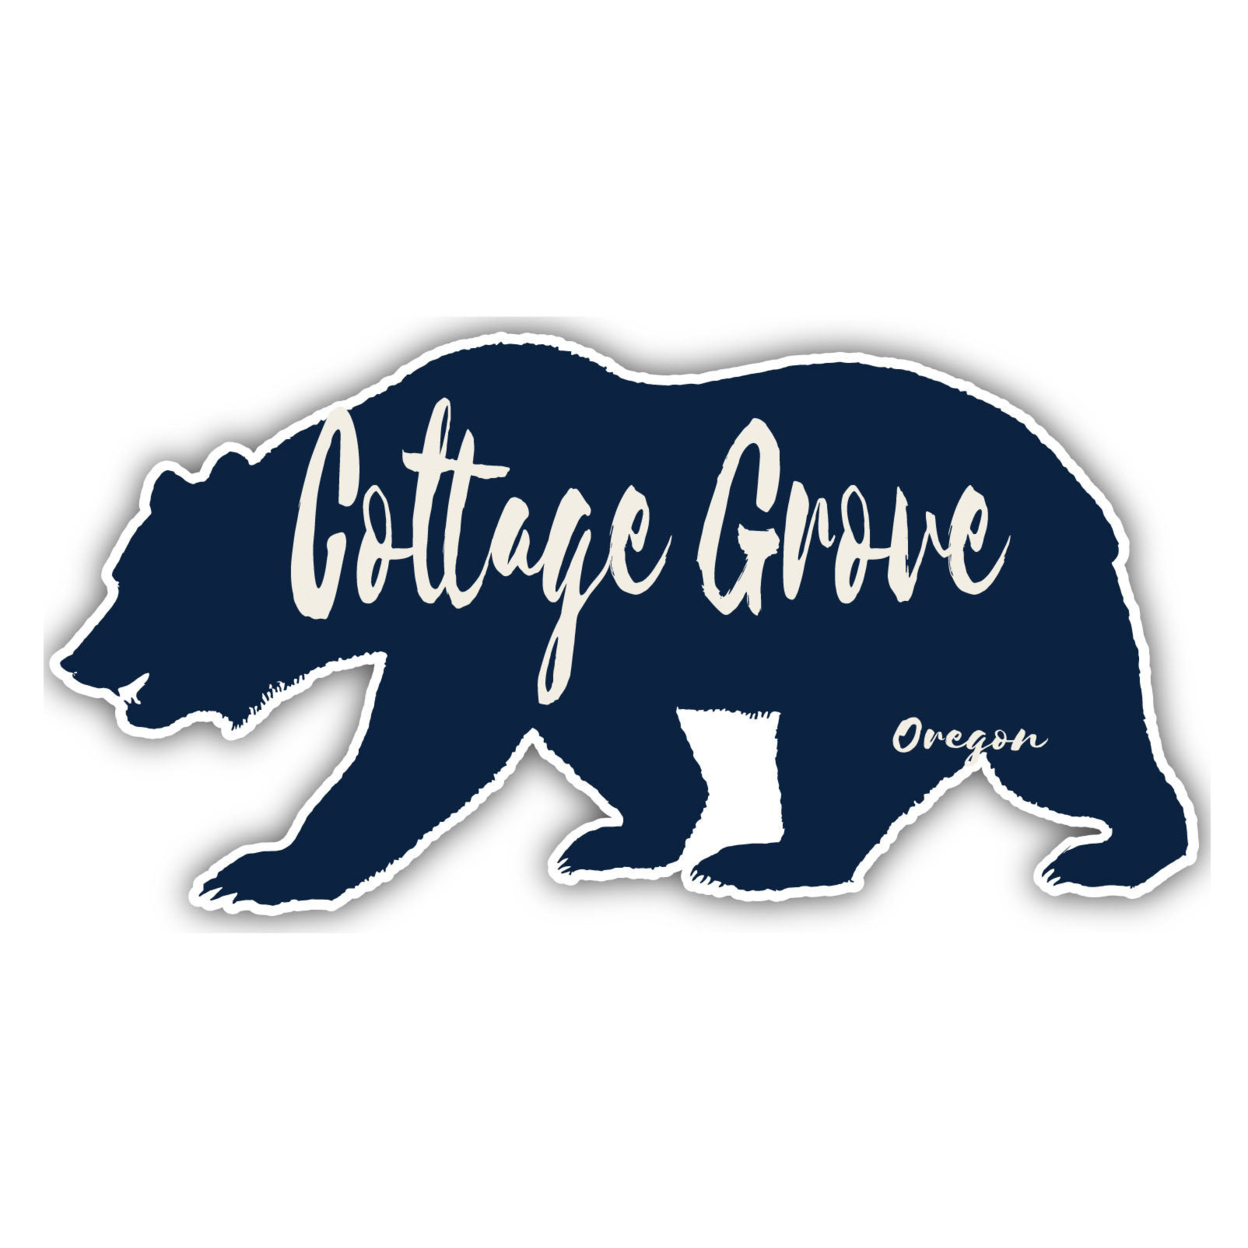 Cottage Grove Oregon Souvenir Decorative Stickers (Choose Theme And Size) - Single Unit, 10-Inch, Tent